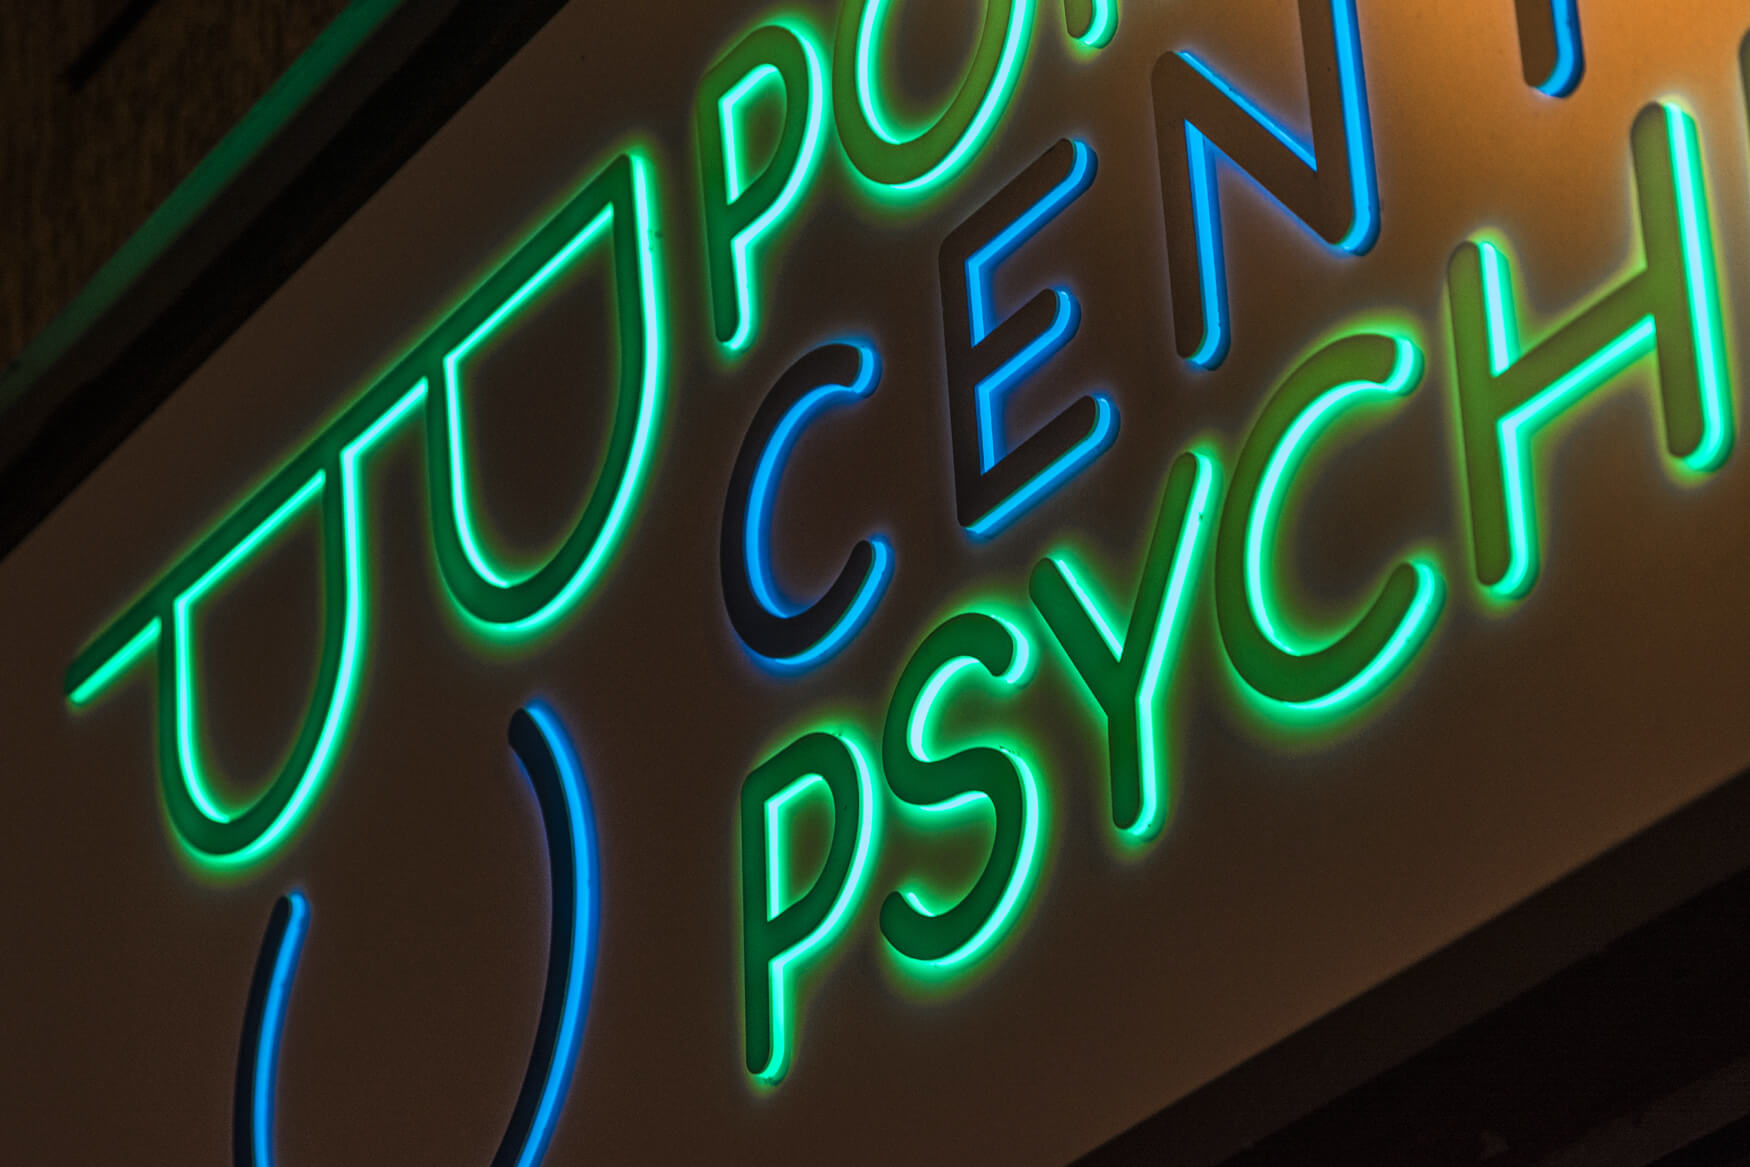 Pommersches Zentrum für Psychiatrie - Pommersches Psychiatriezentrum - leuchtende Werbetafel aus Dibond über dem Eingang